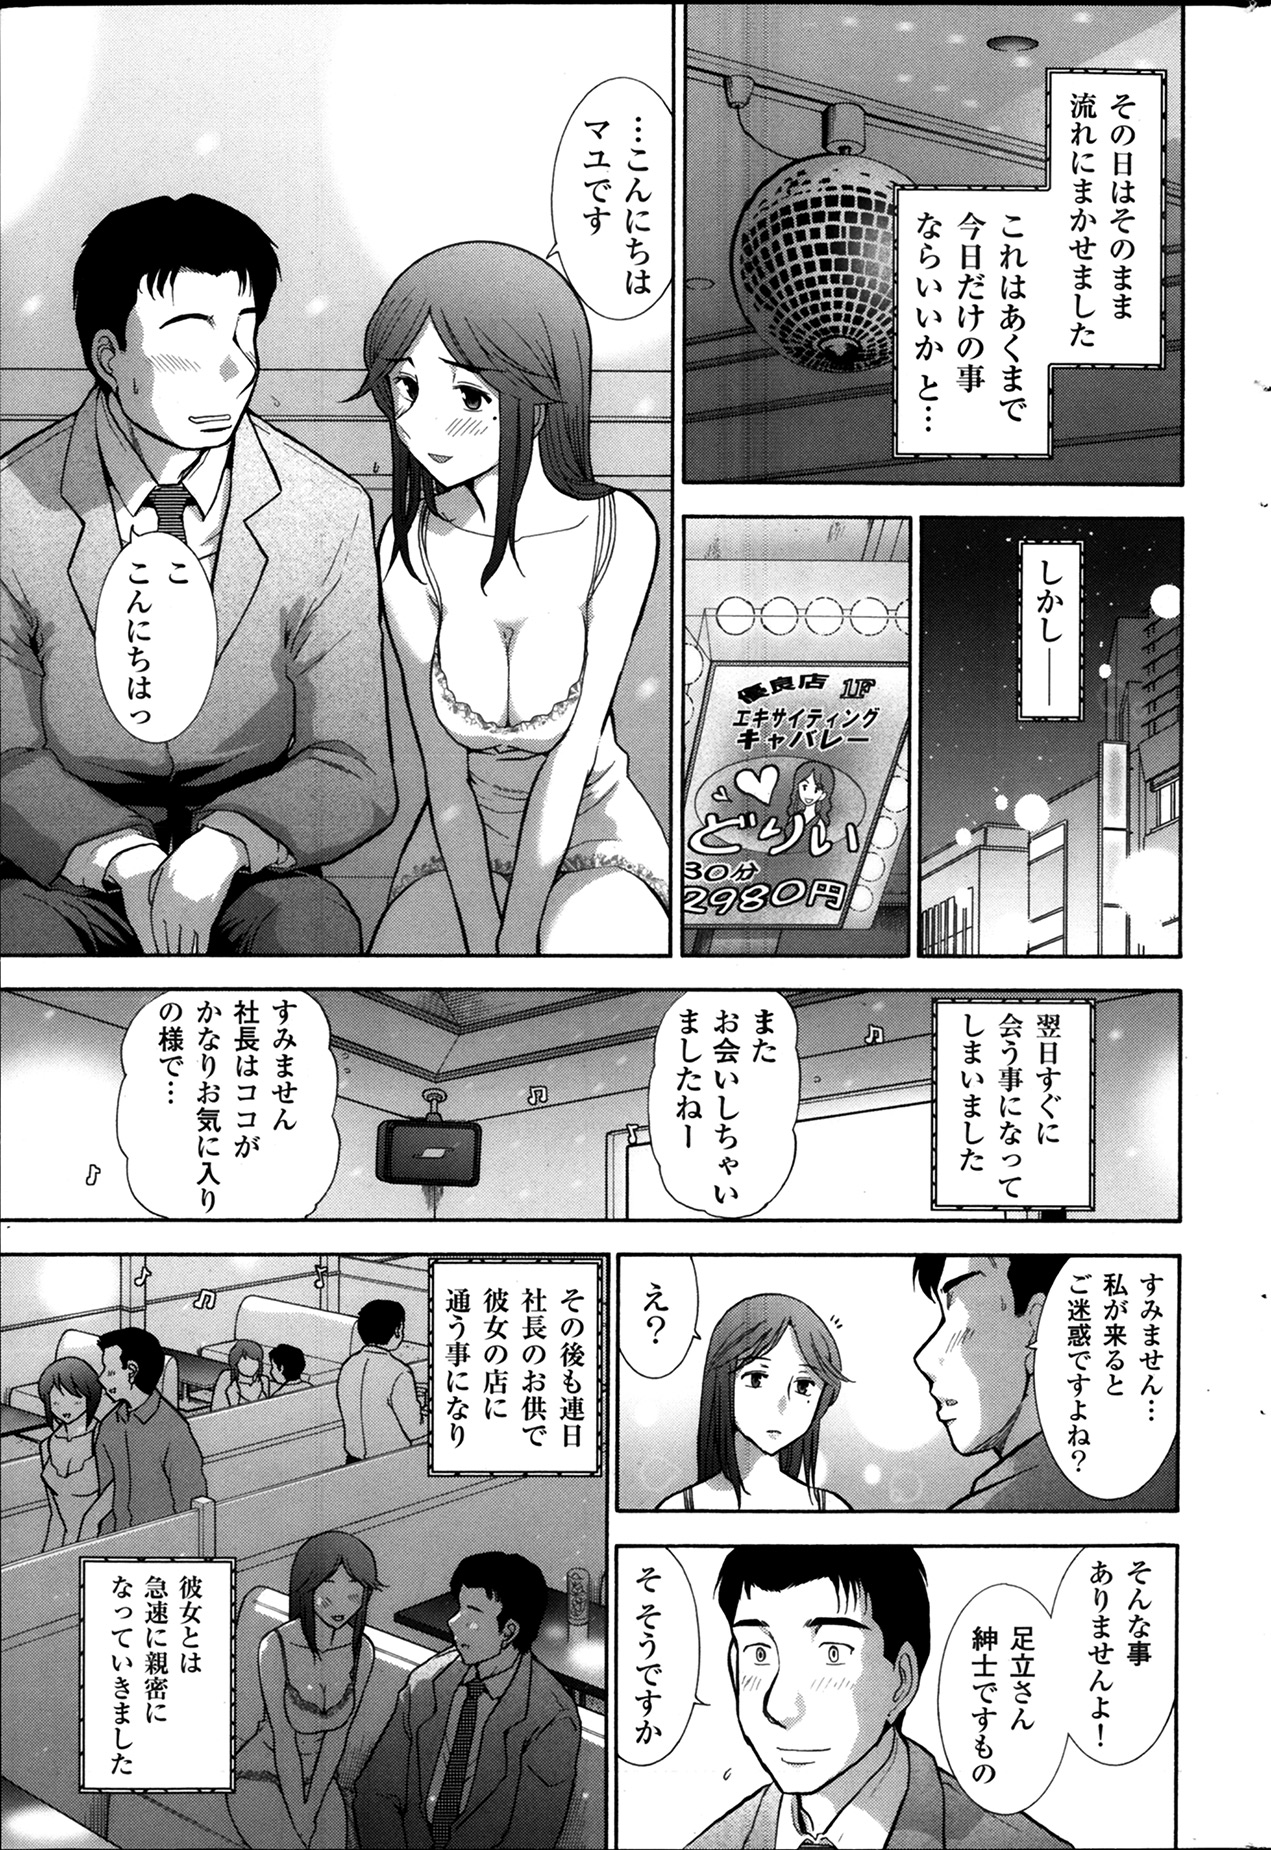 [大見武士] メンズゴールド 2013年12月増刊 三ツ星お姉さん 超ベスト!!